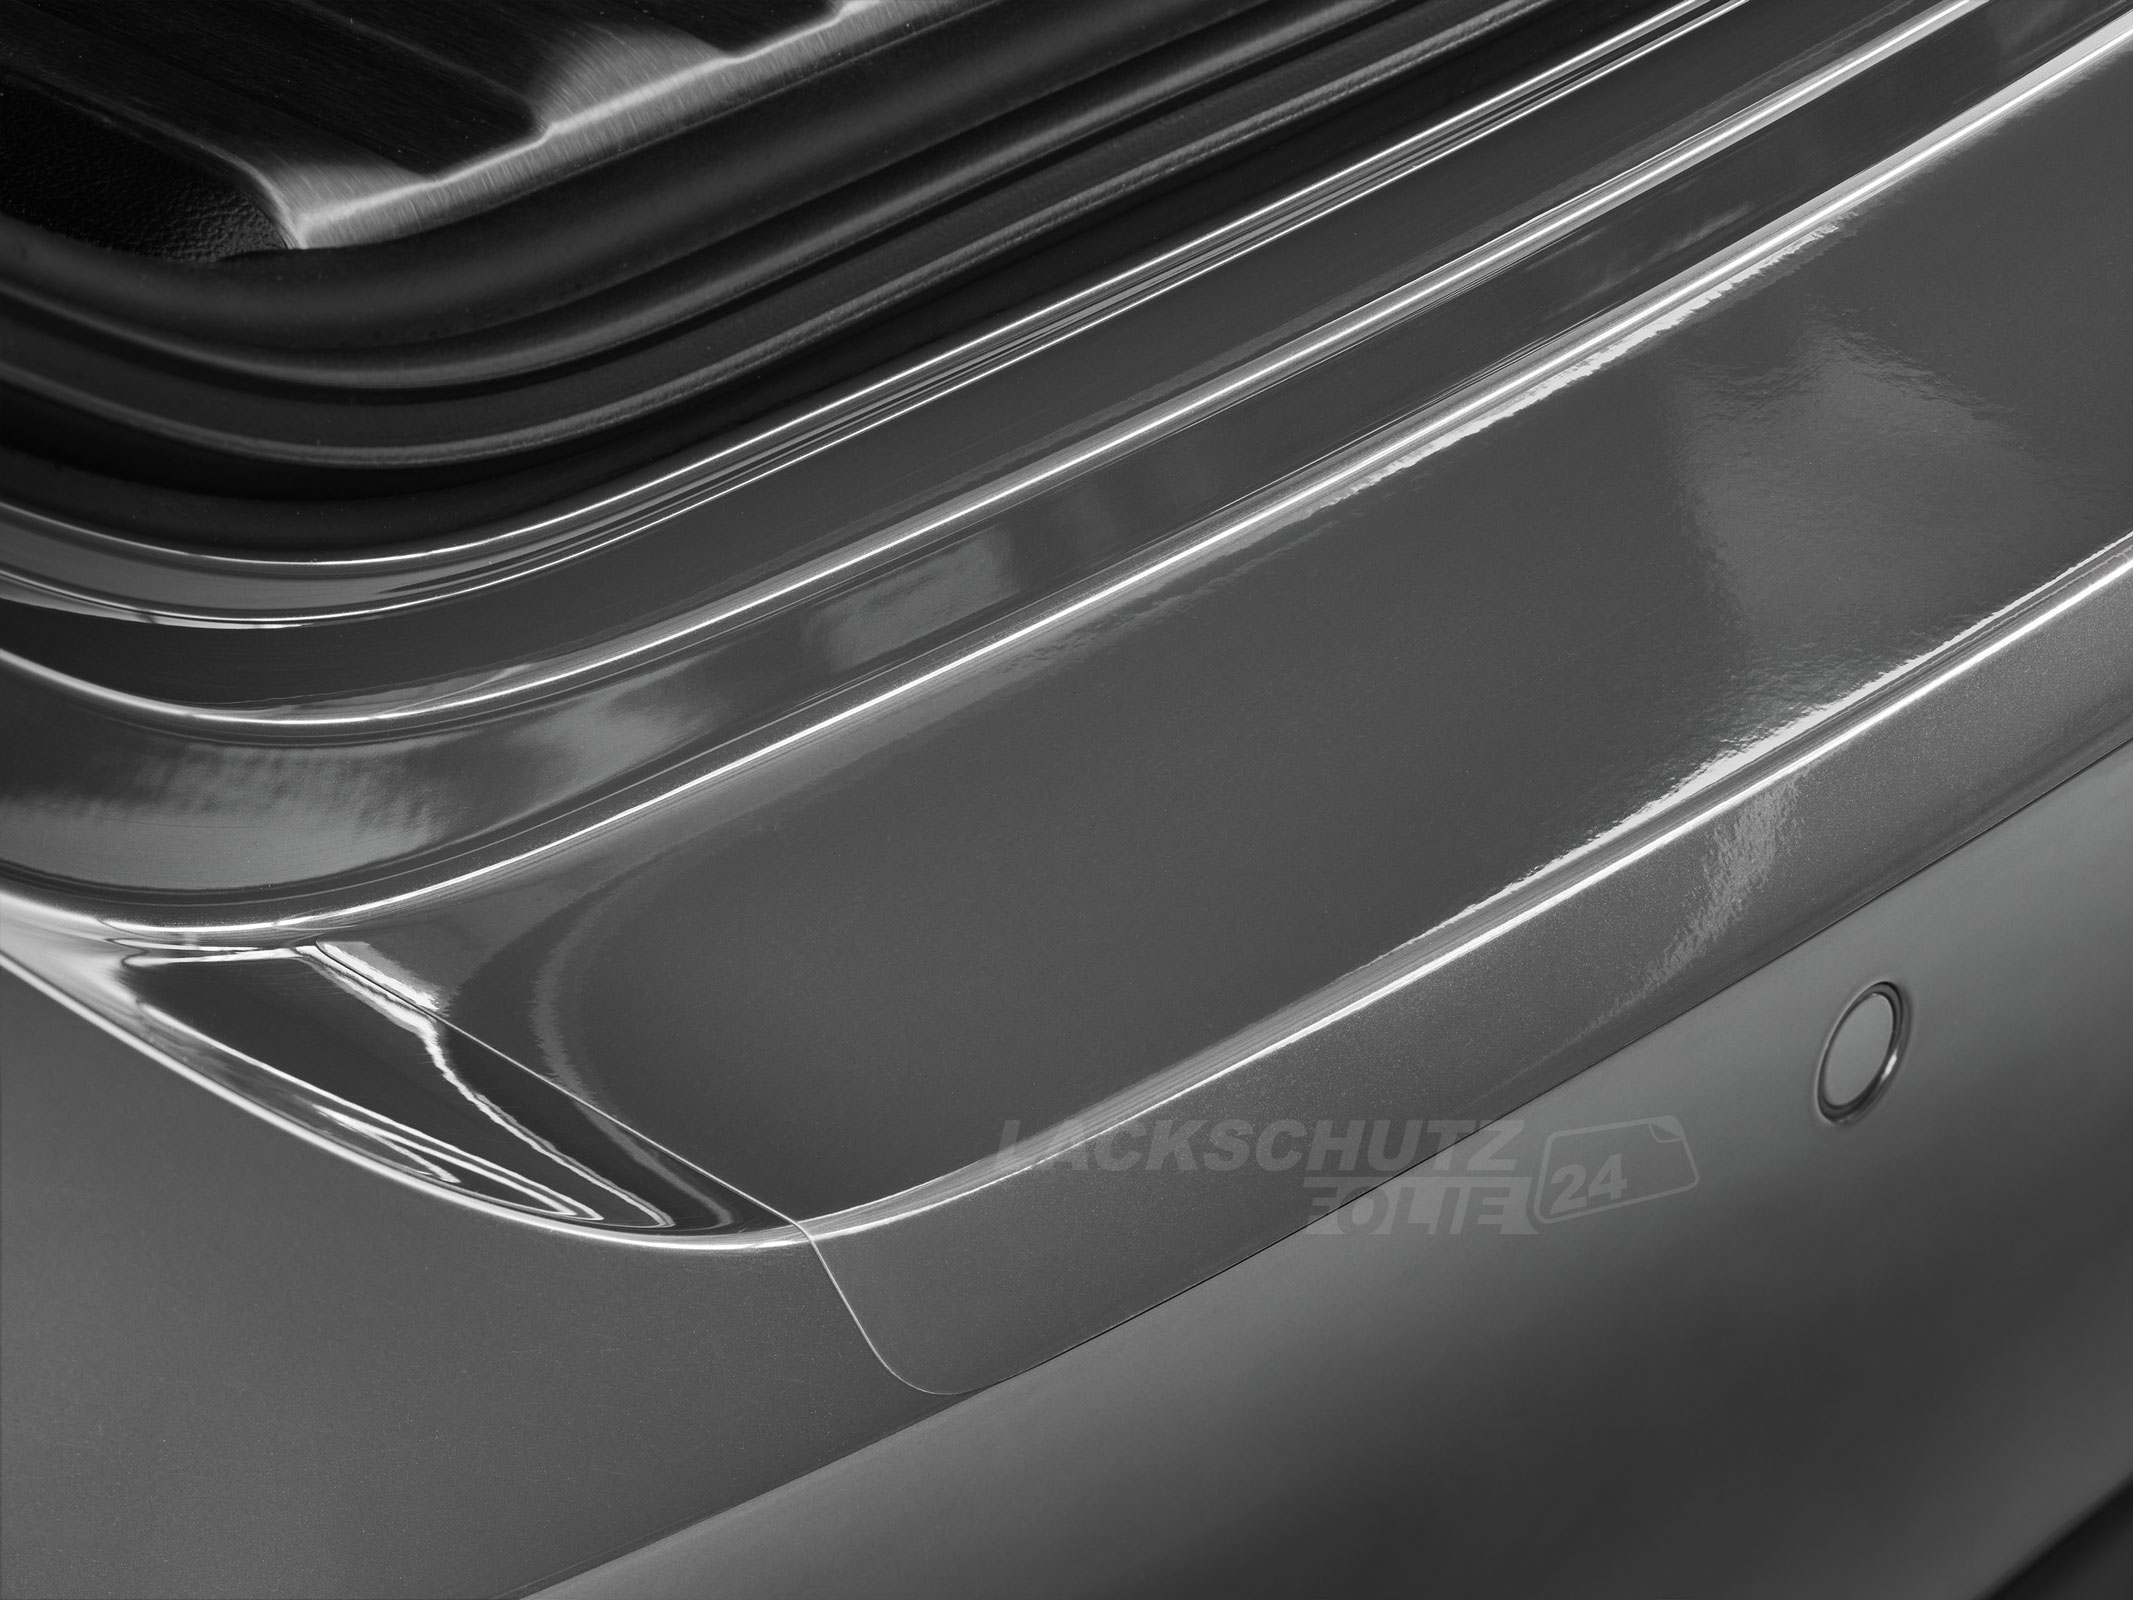 Ladekantenschutzfolie - Transparent Glatt Hochglänzend 240 µm stark für BMW X6 Typ F16, BJ 2014-2019